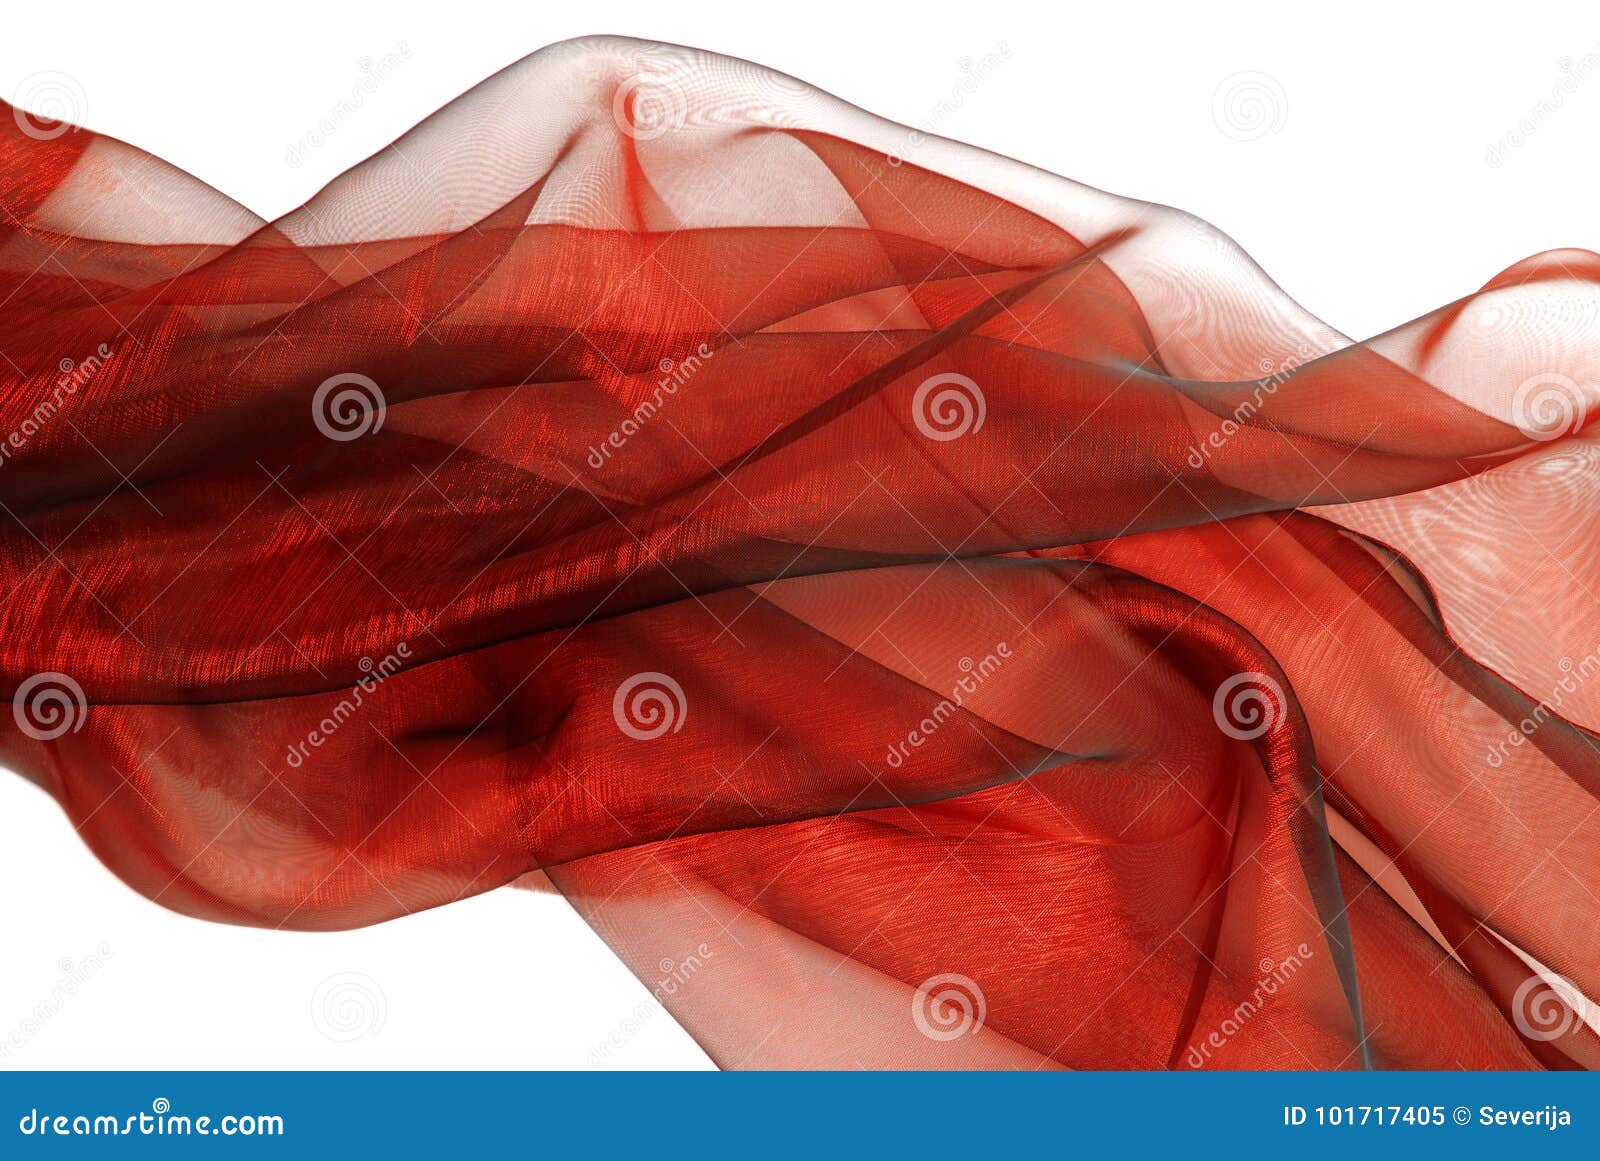 Tessuto Rosso Ondulato Dell'organza Immagine Stock - Immagine di popolare,  decorativo: 101717405